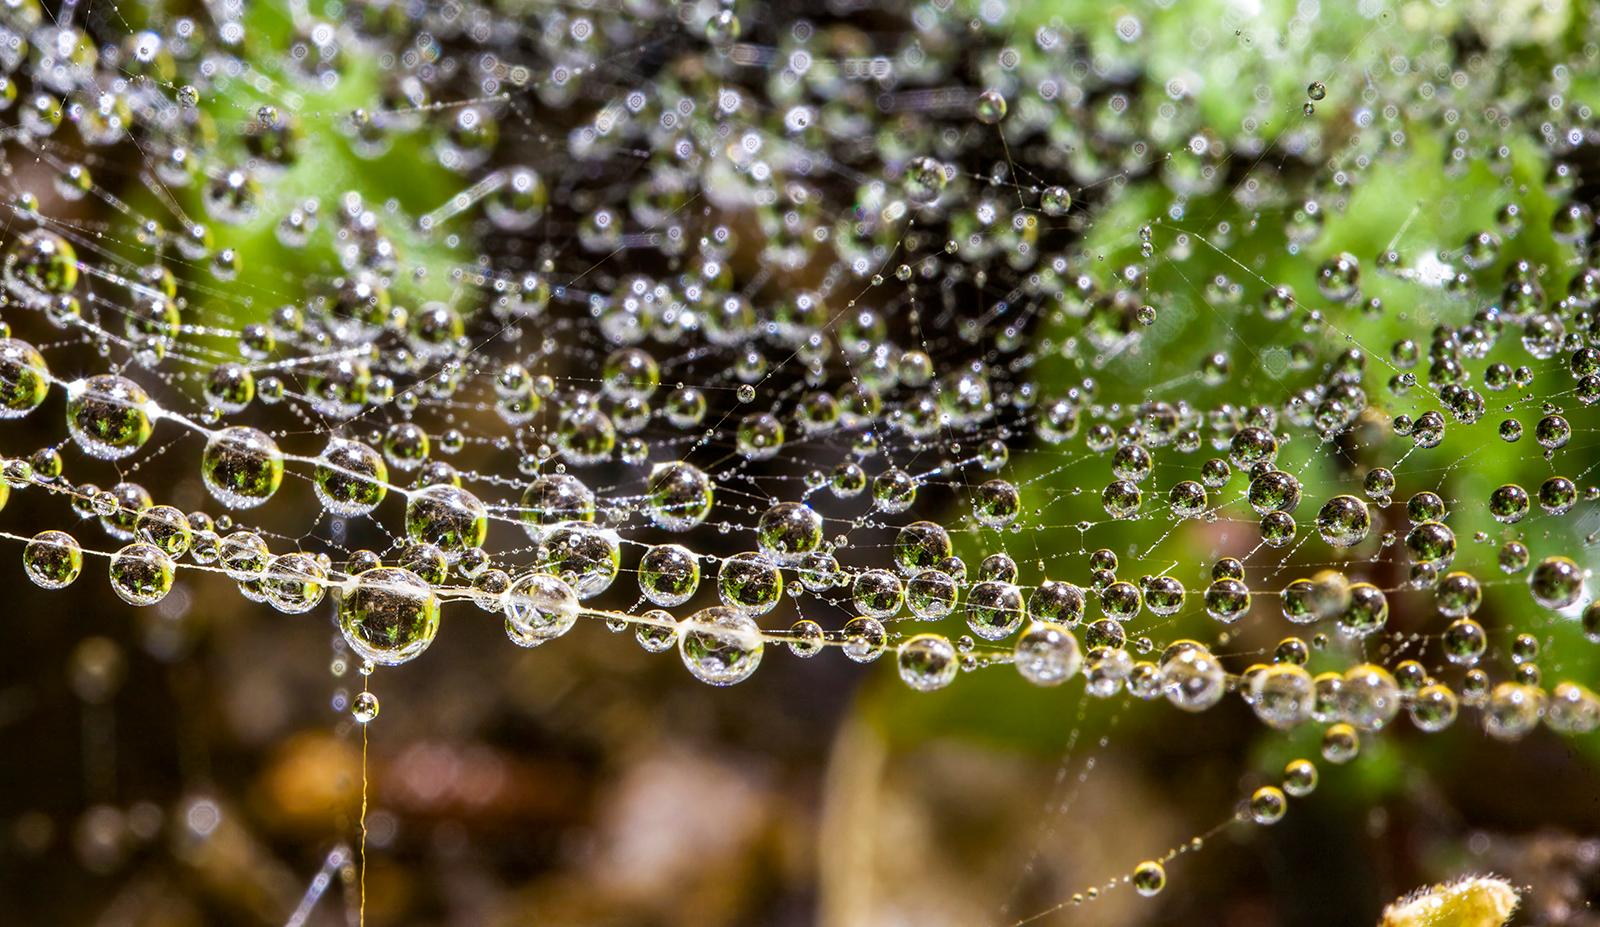 Droplets 1 - Nature limitierte Auflage, Floral grün braun, Contemporary – Photograph von Sam Thomas